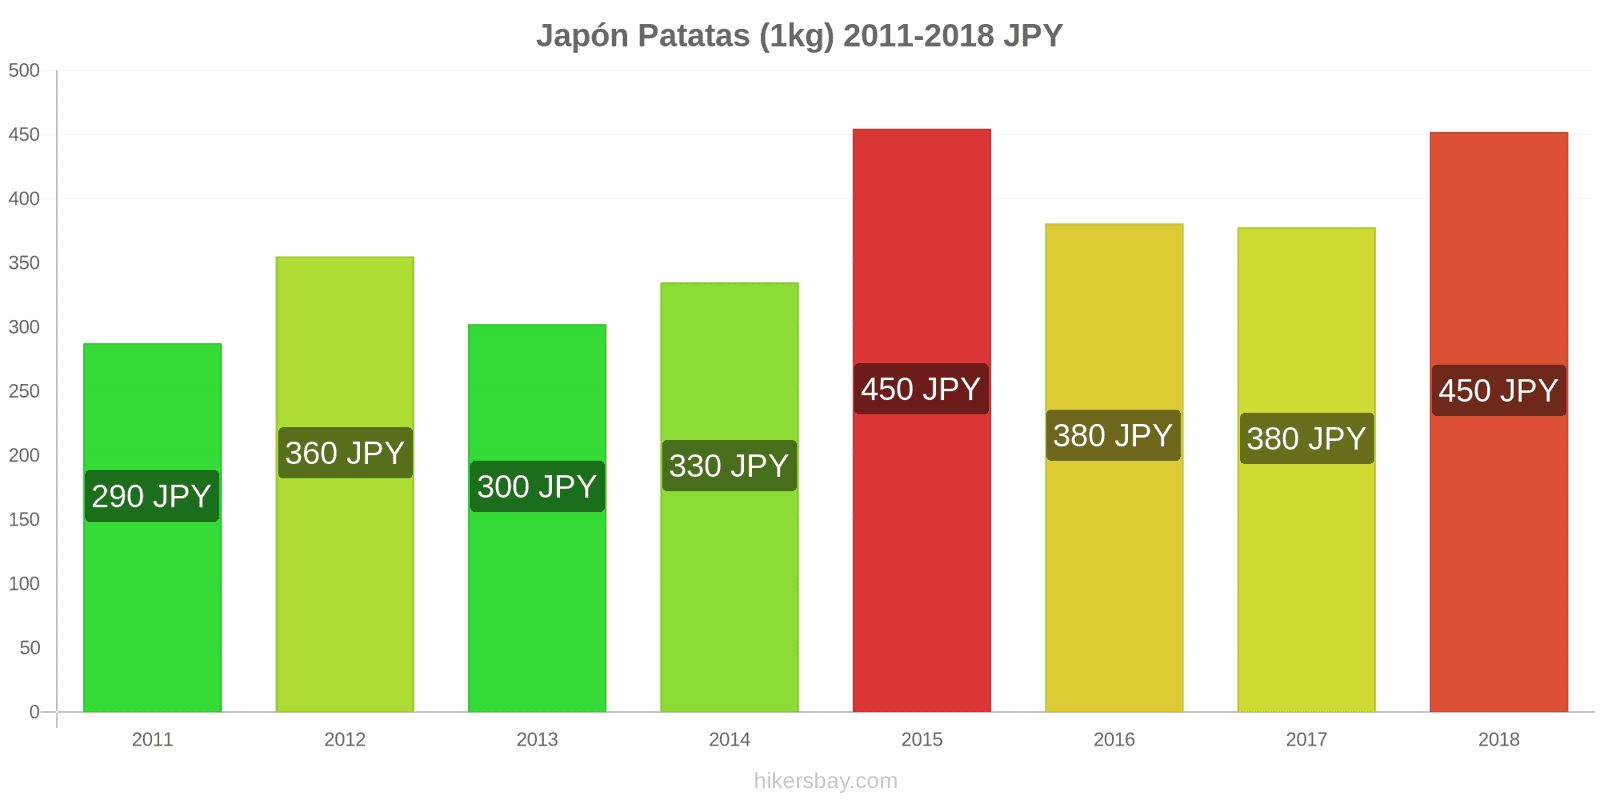 Japón cambios de precios Patatas (1kg) hikersbay.com